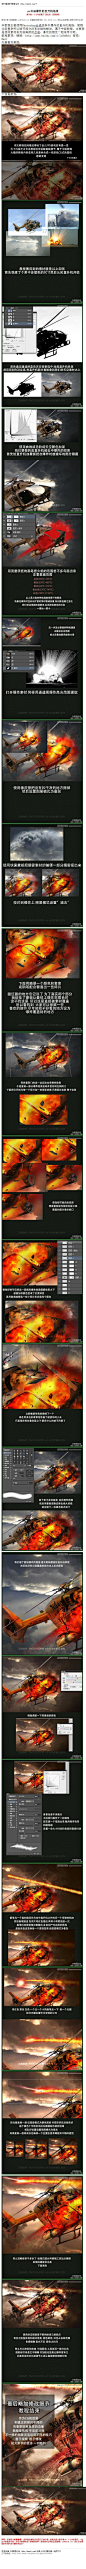 #照片合成#《photoshop合成爆炸的直升机场景》 本教程主要使用Photoshop合成战争中爆炸的直升机海报，教程比较复杂所以细节部分没有详细的解说，属于中级教程，主要就是使用素材来完成海报的合成， 教程网址：http://www.16xx8.com/photoshop/jiaocheng/2014/133976.html